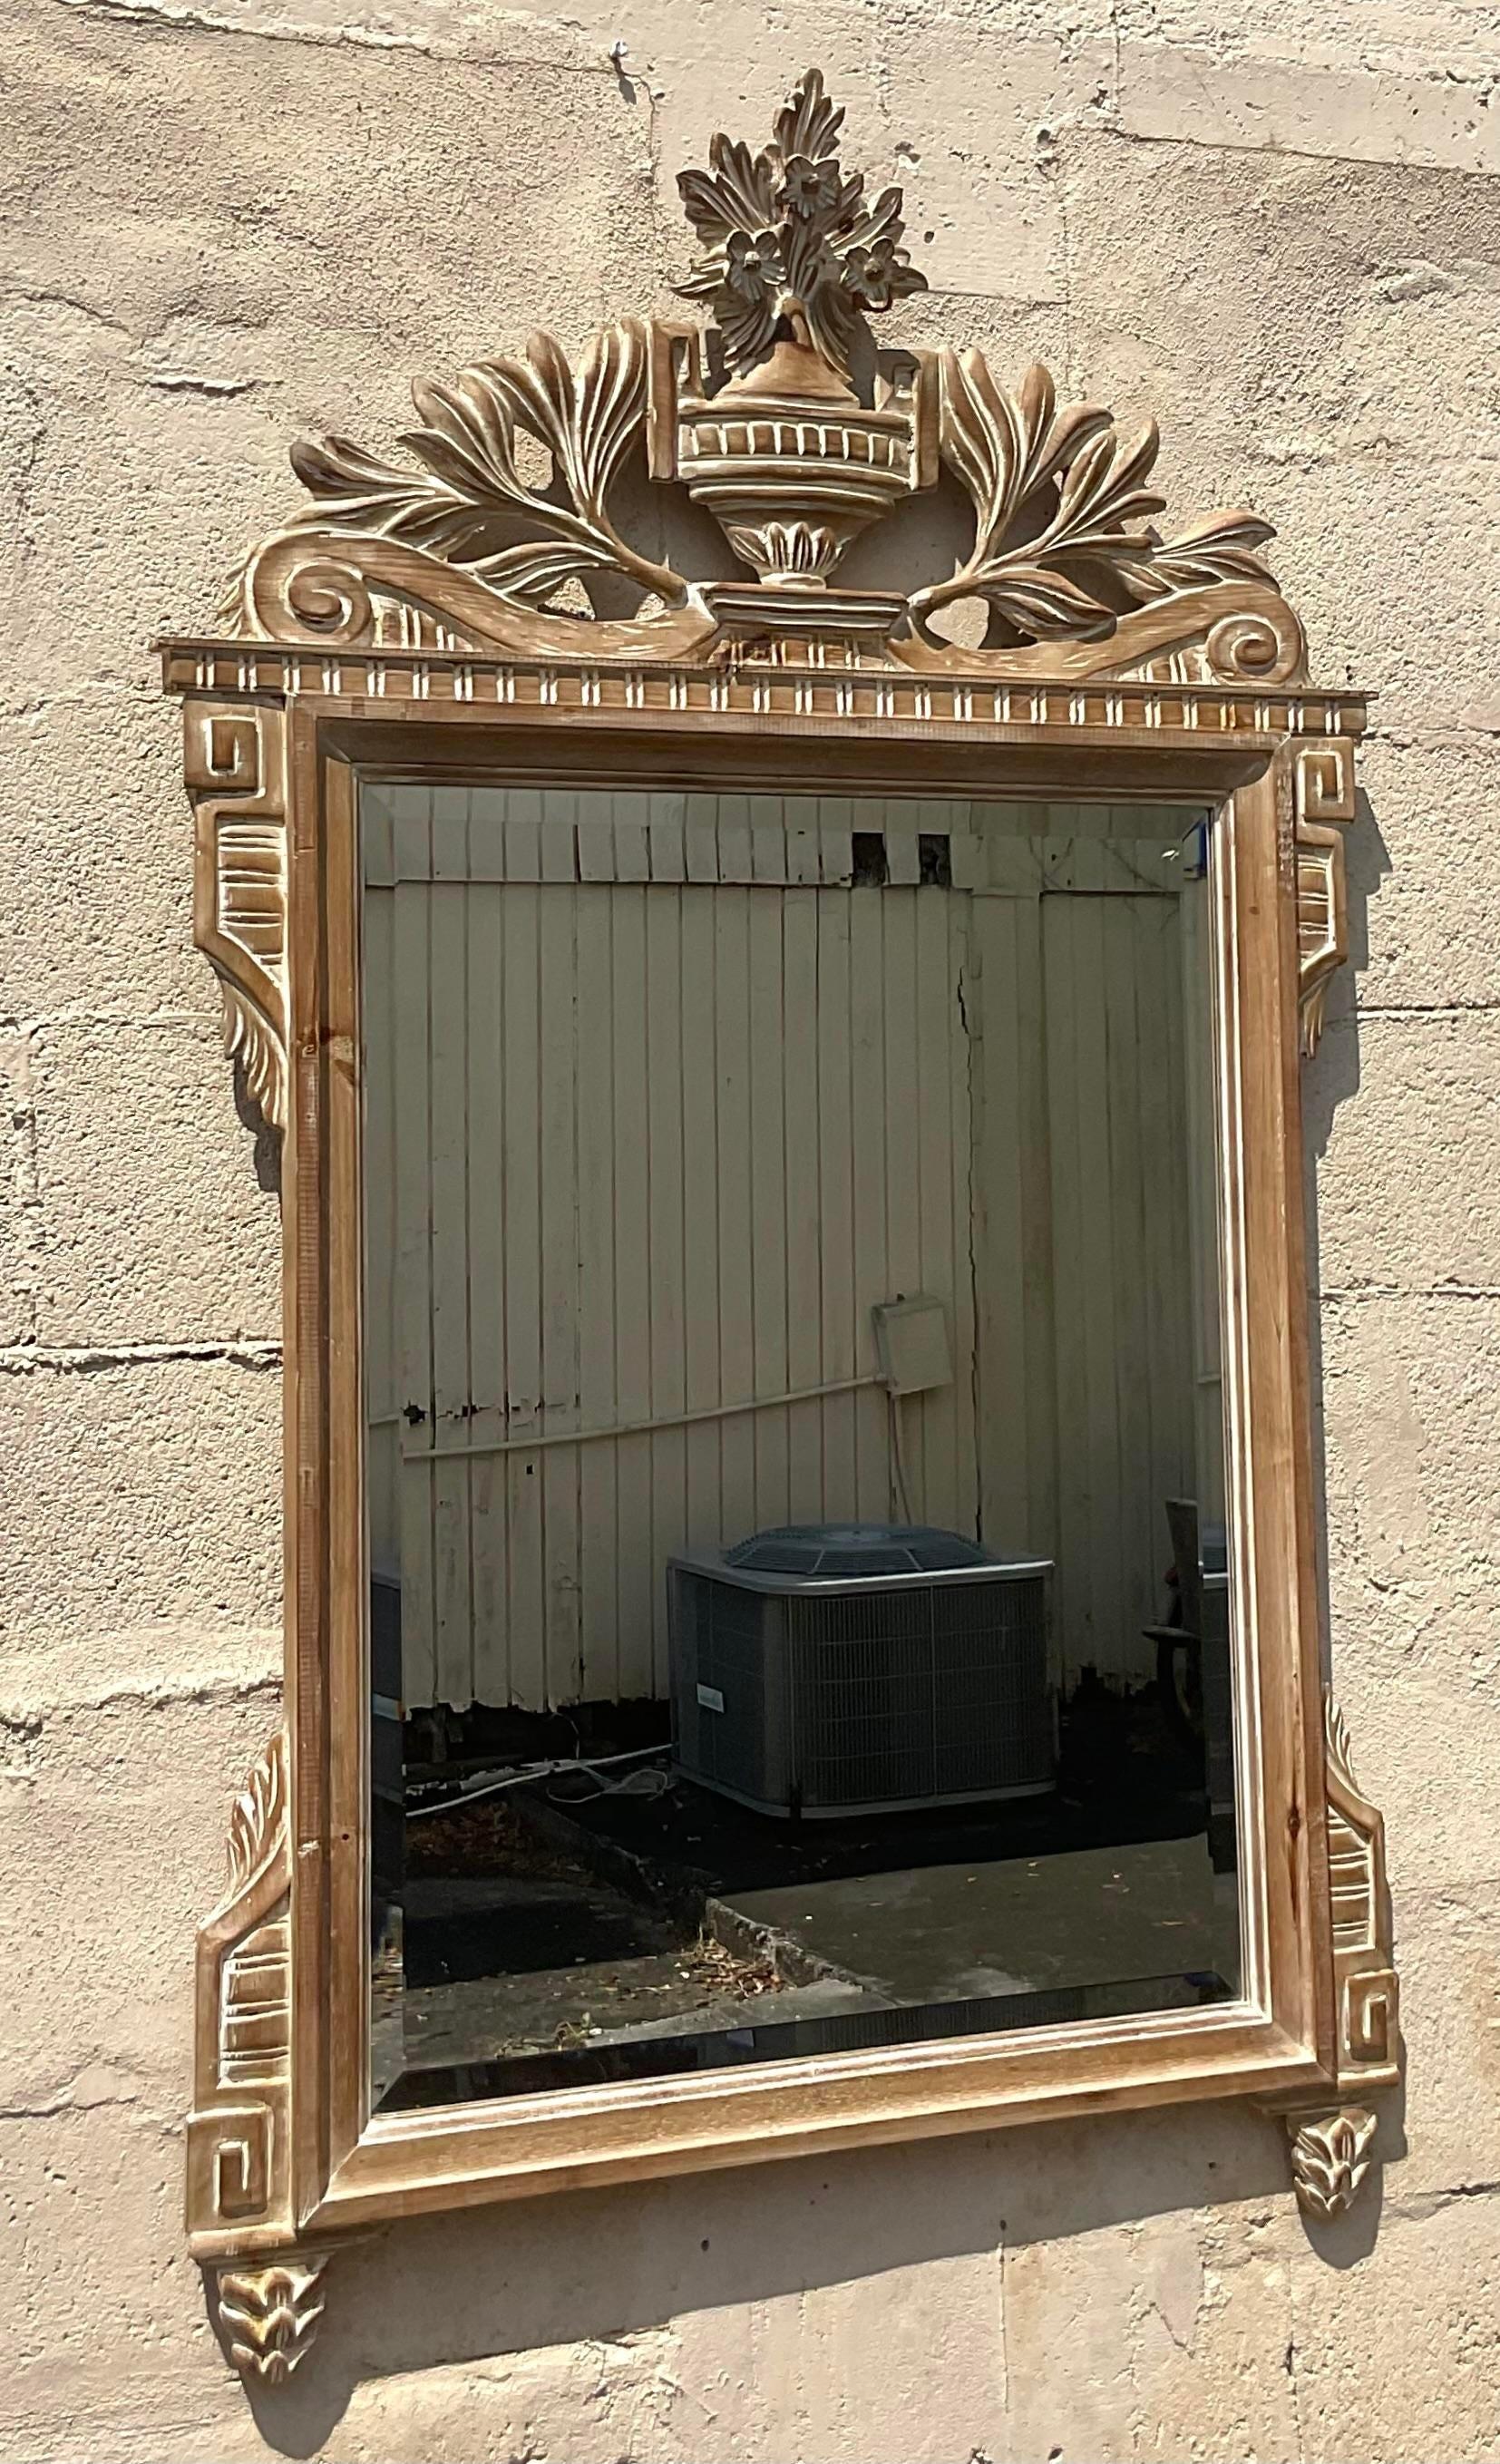 Rehaussez votre décor avec la sophistication intemporelle de ce miroir en bois sculpté de style Régence italienne. Fabriqué avec une attention méticuleuse aux détails, son design orné et sa riche finition en bois exsudent le style américain